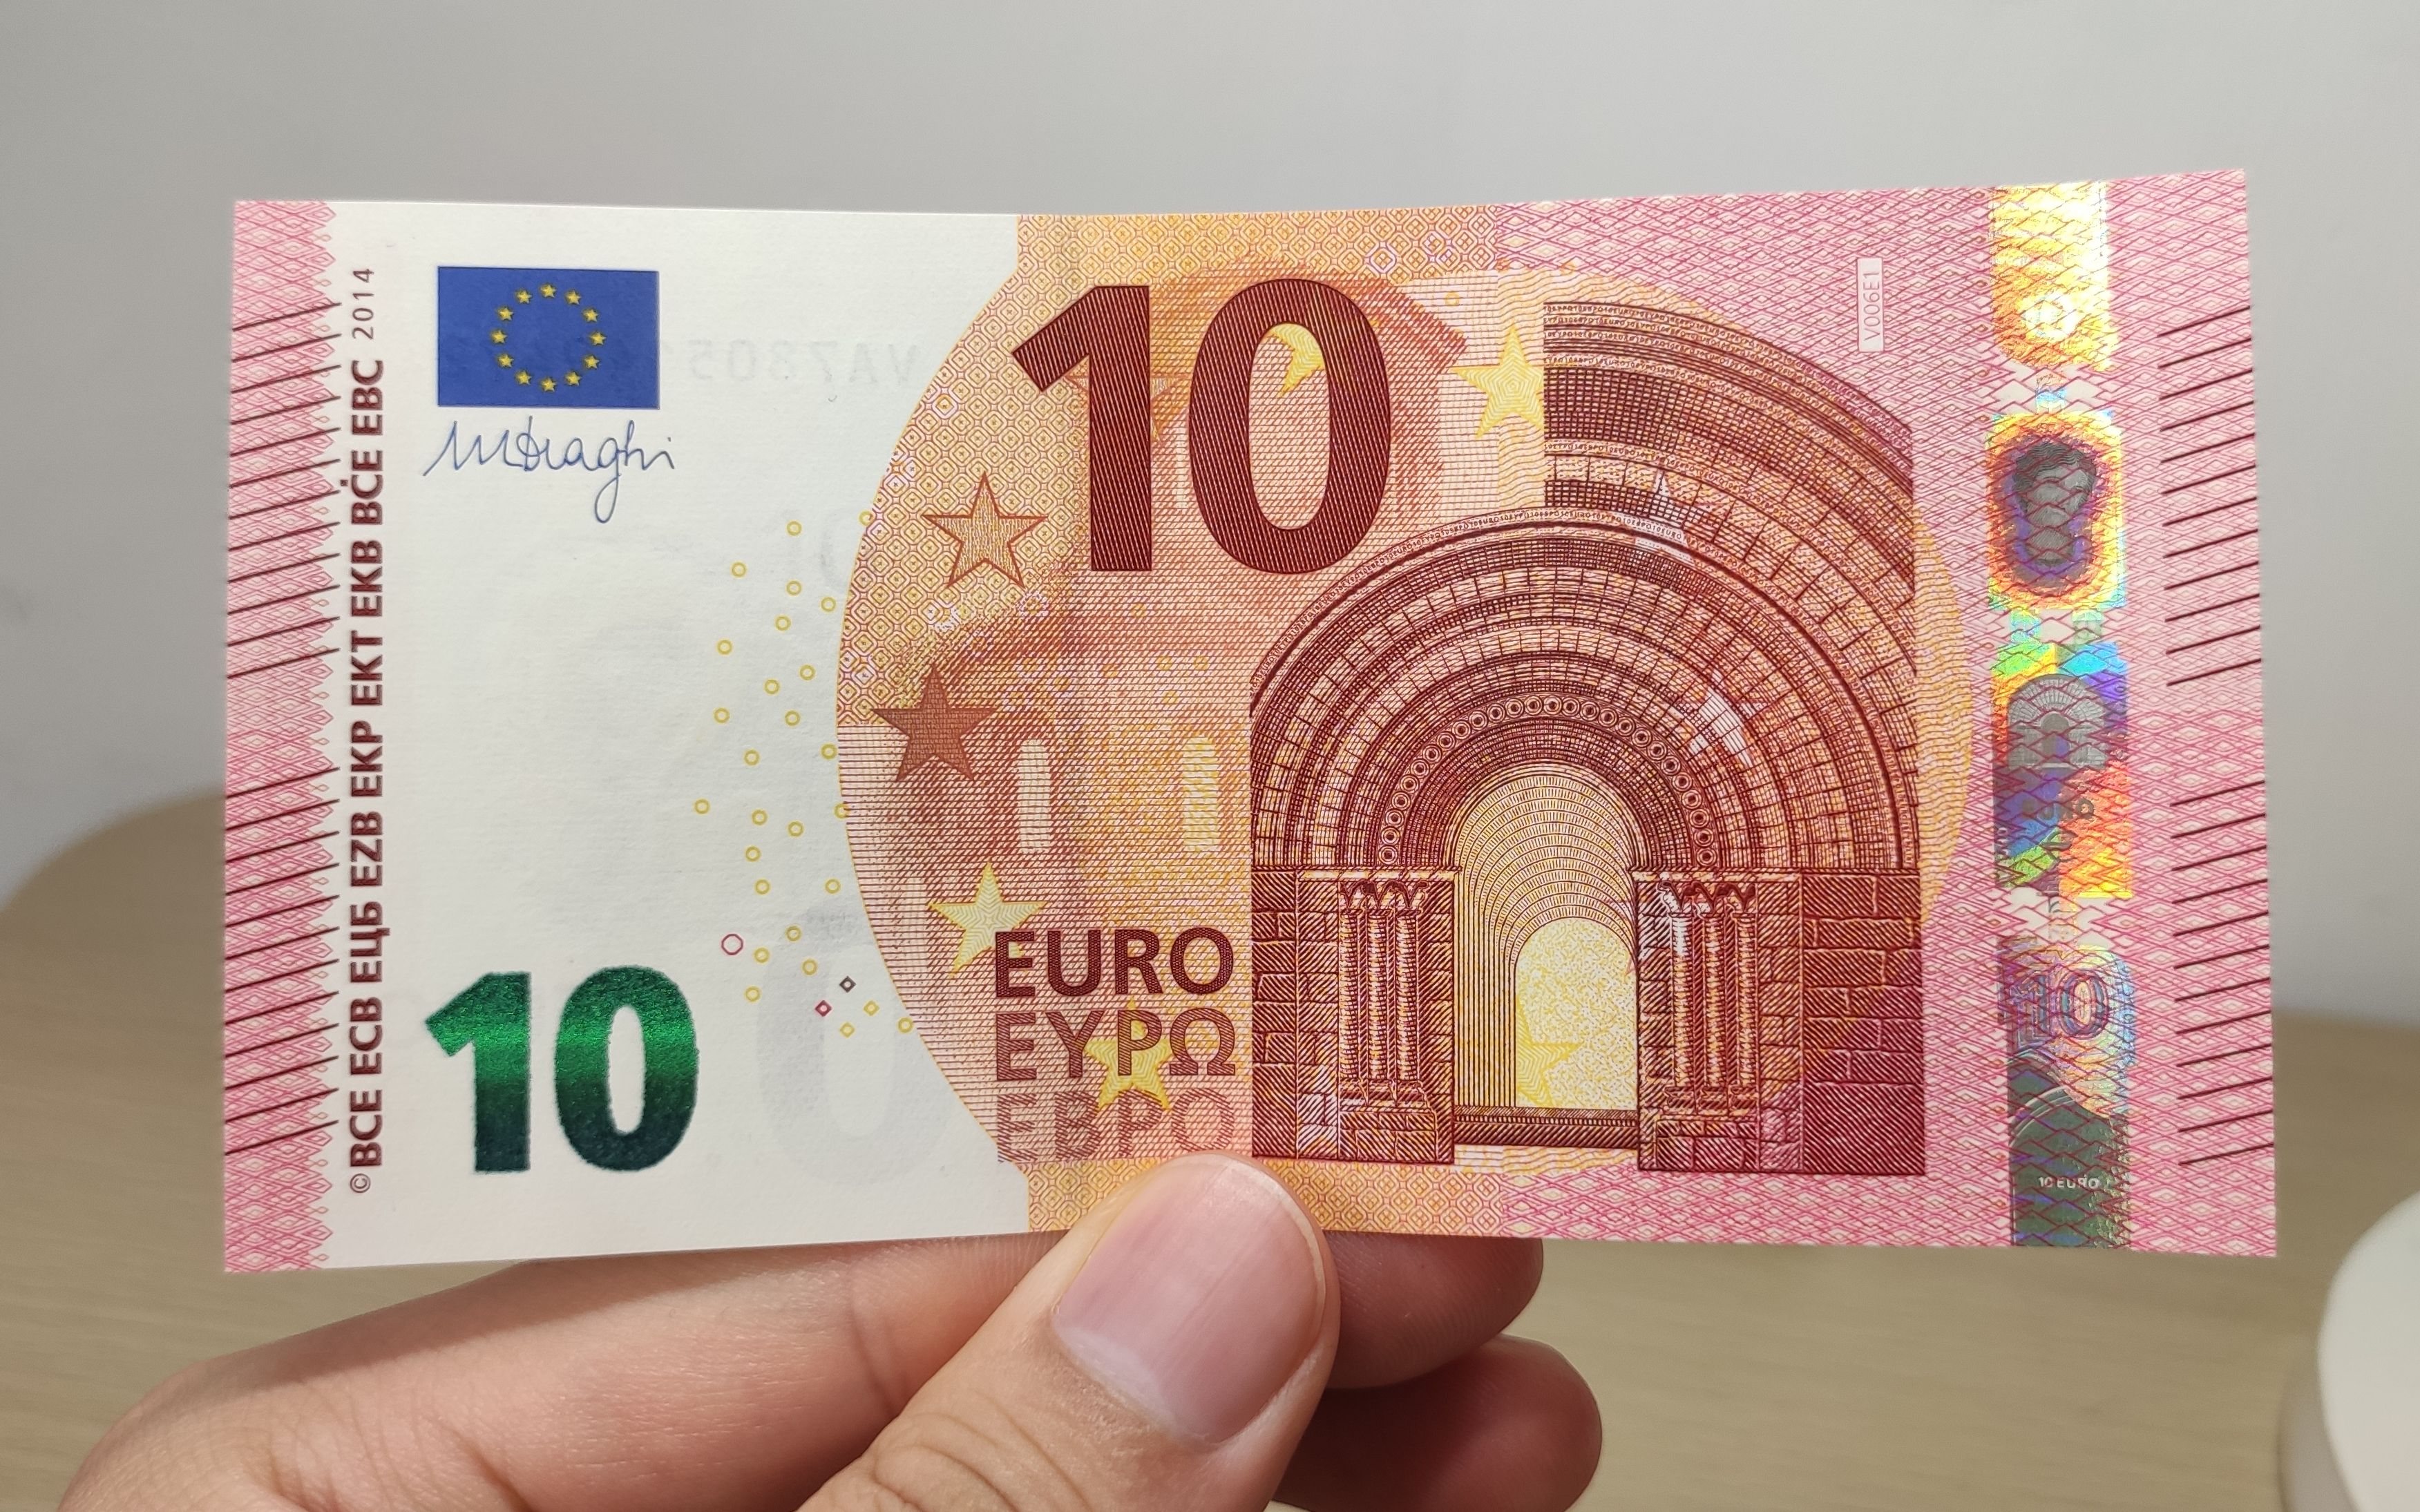 欧元纸币简介 - 哔哩哔哩